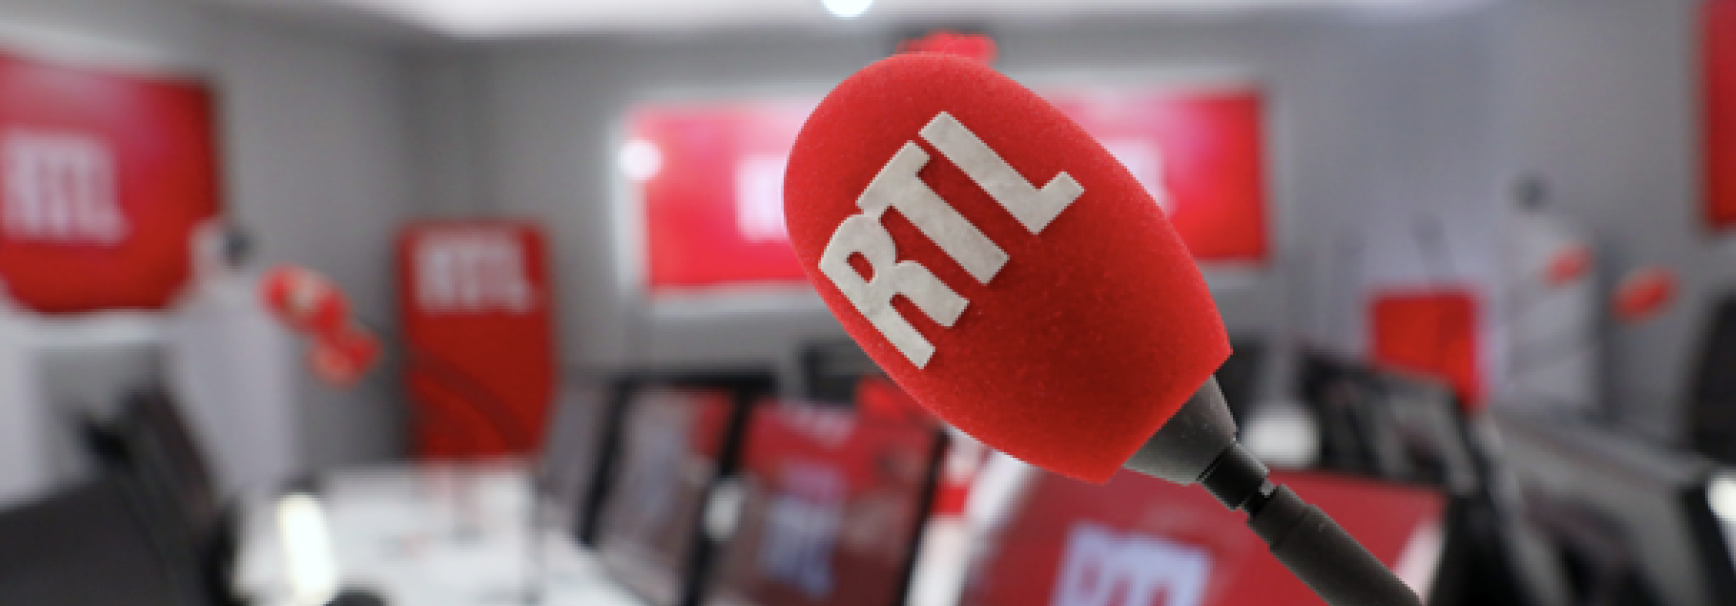 RTL dévoile sa grille de l'été 2019